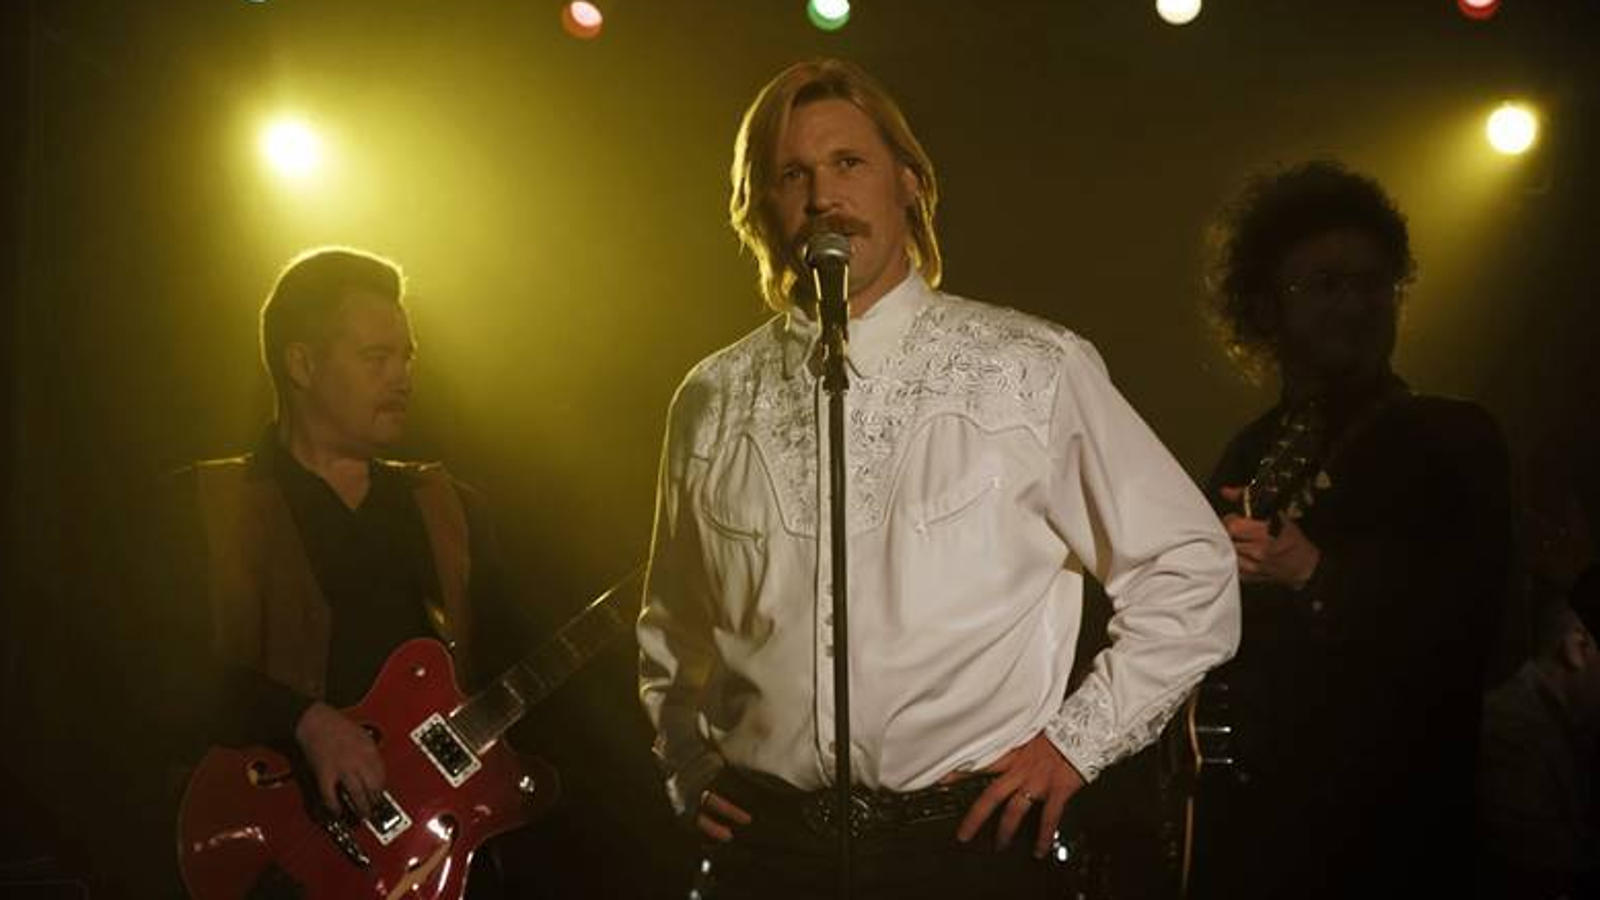 Kuvassa Kari Tapiota esittävä Matti Ristinen seisoo mikrofonin ääressä päällään valkoinen paita, jossa on yläosassa ja hihoissa kirjailua.  Vieressä on basisti soittamassa punaisella kitaralla ja taustalta näkyy keltavaloa tummalla taustalla sekä valkeita valoja ylä reunassa.